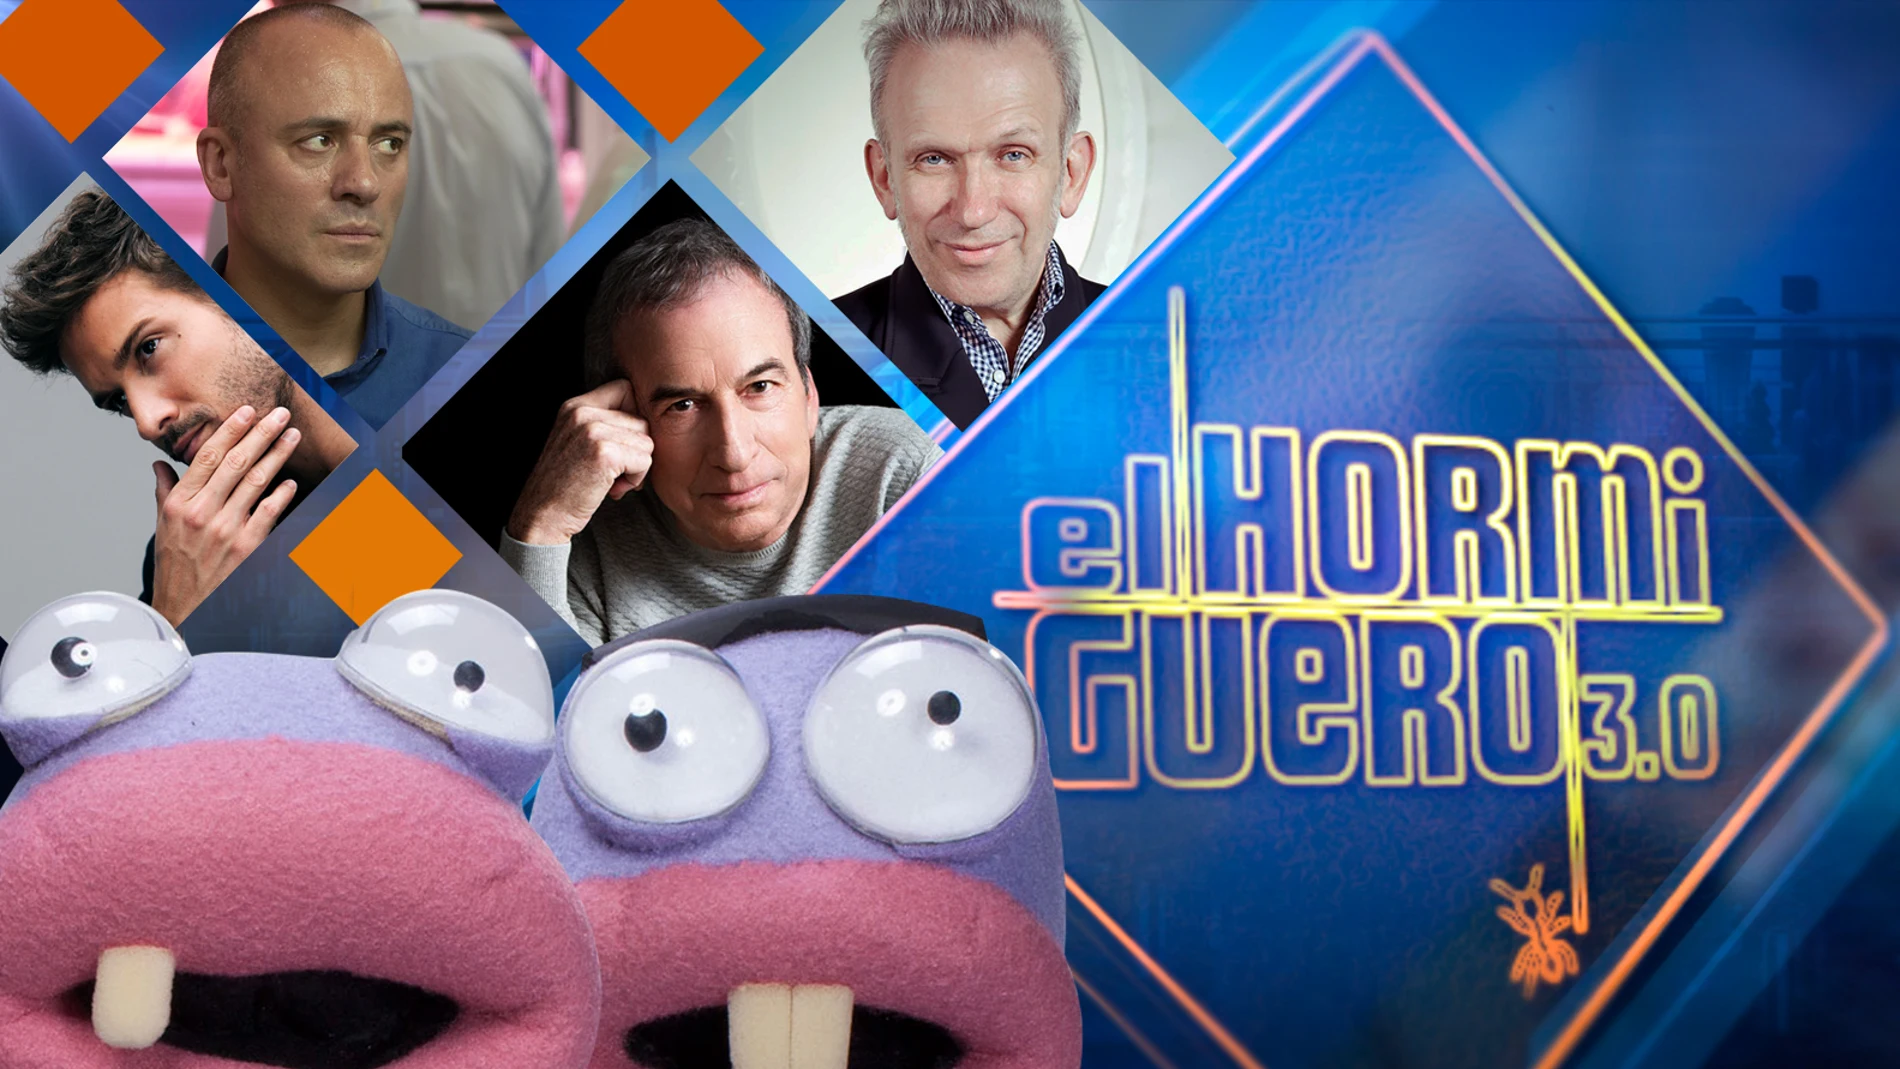 Pablo Alborán, Javier Gutiérrez, José Luis Perales y Jean Paul Gaultier, se divertirán la próxima semana en 'El Hormiguero3.0'